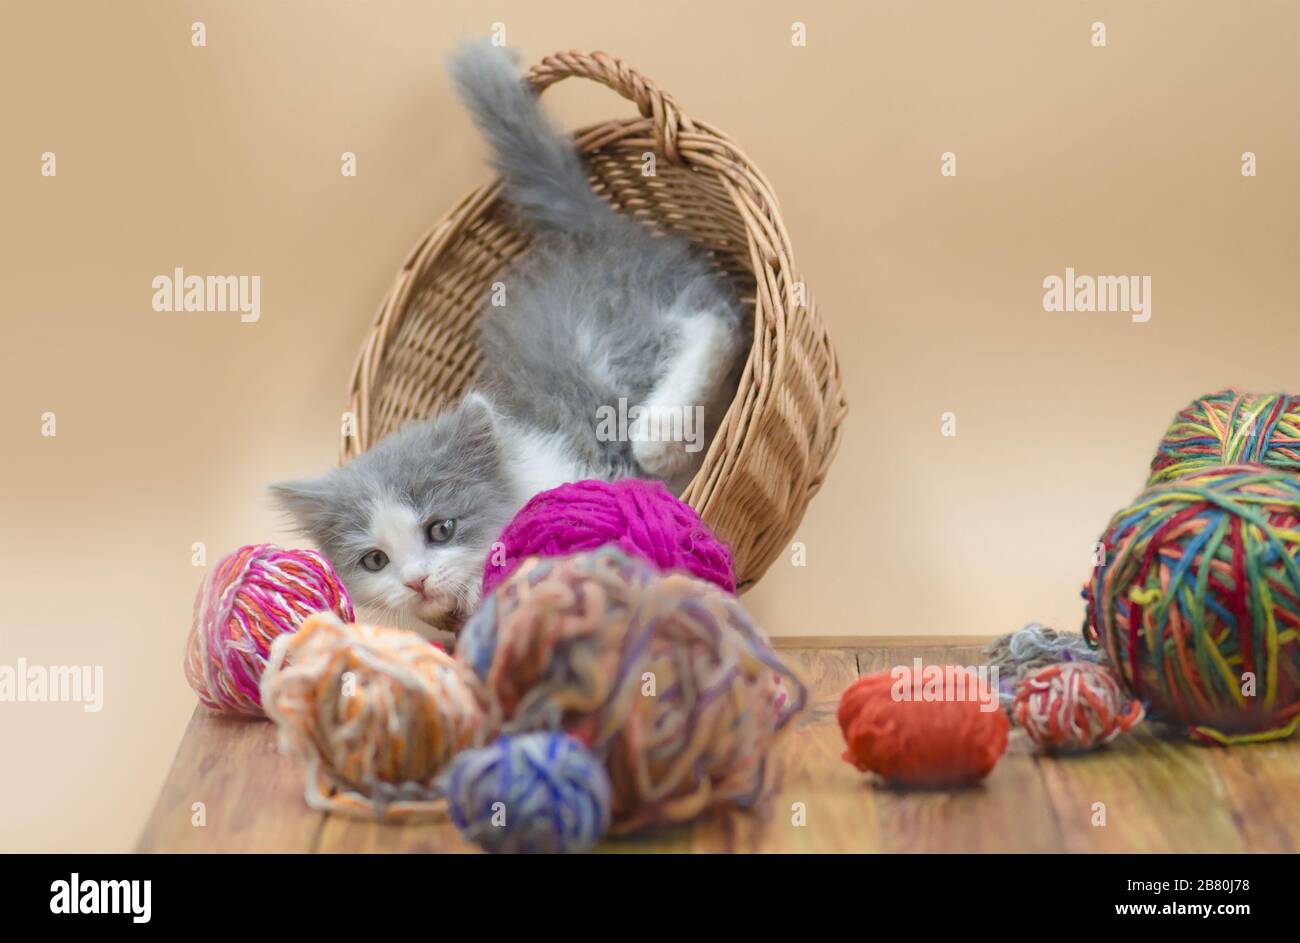 Süße flauschige Katze spielt mit Strickball. Süßes Kätzchen und Fadenball.  Katze mit Fäden in einem gewattelten Korb Stockfotografie - Alamy